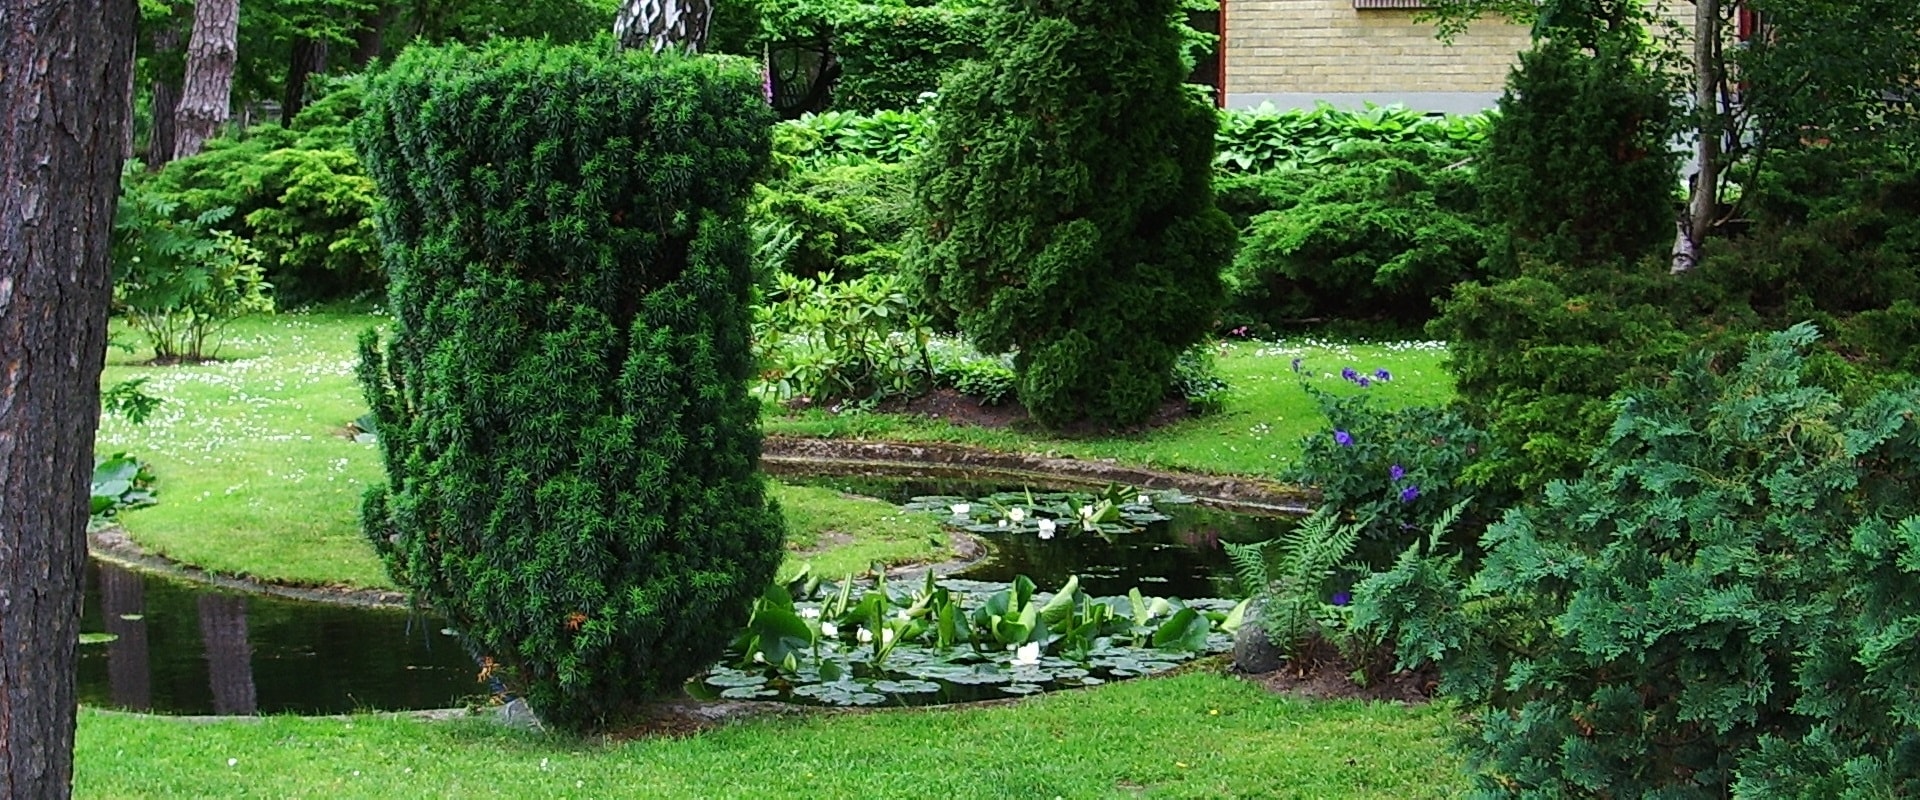 Gartenanlagen, Grünanlagen und Teiche - Natur zum Wohlfühlen bei Ihnen zuhause. Jetzt zum Traumgarten mit Hebbecker Garten- und Landschaftsbau.